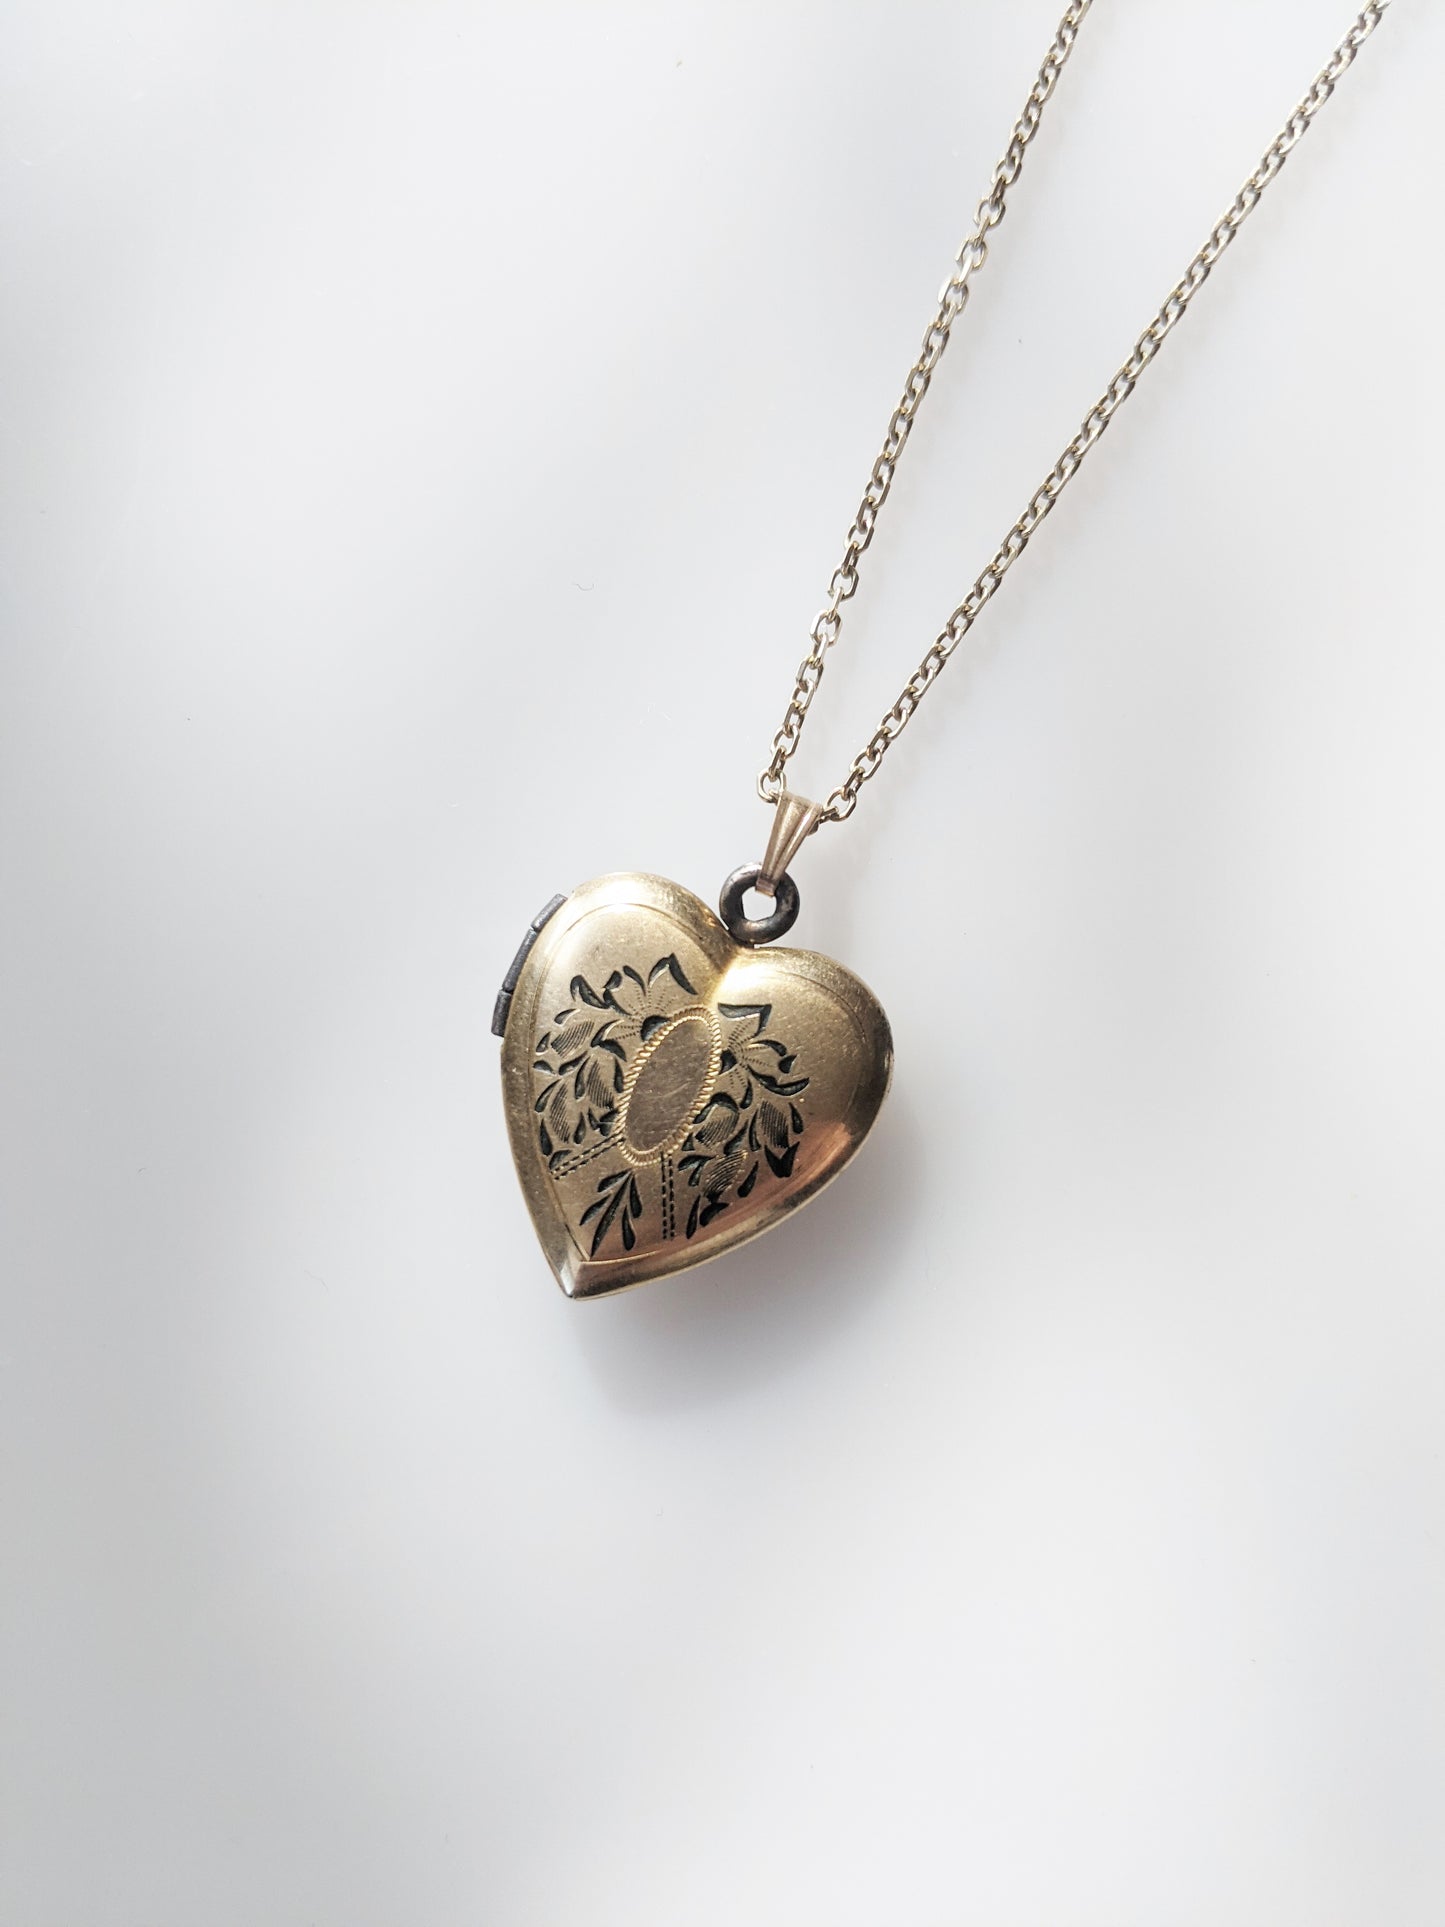 Antique 12kt Gold Heart-Shaped Locket | Enameled Engraving